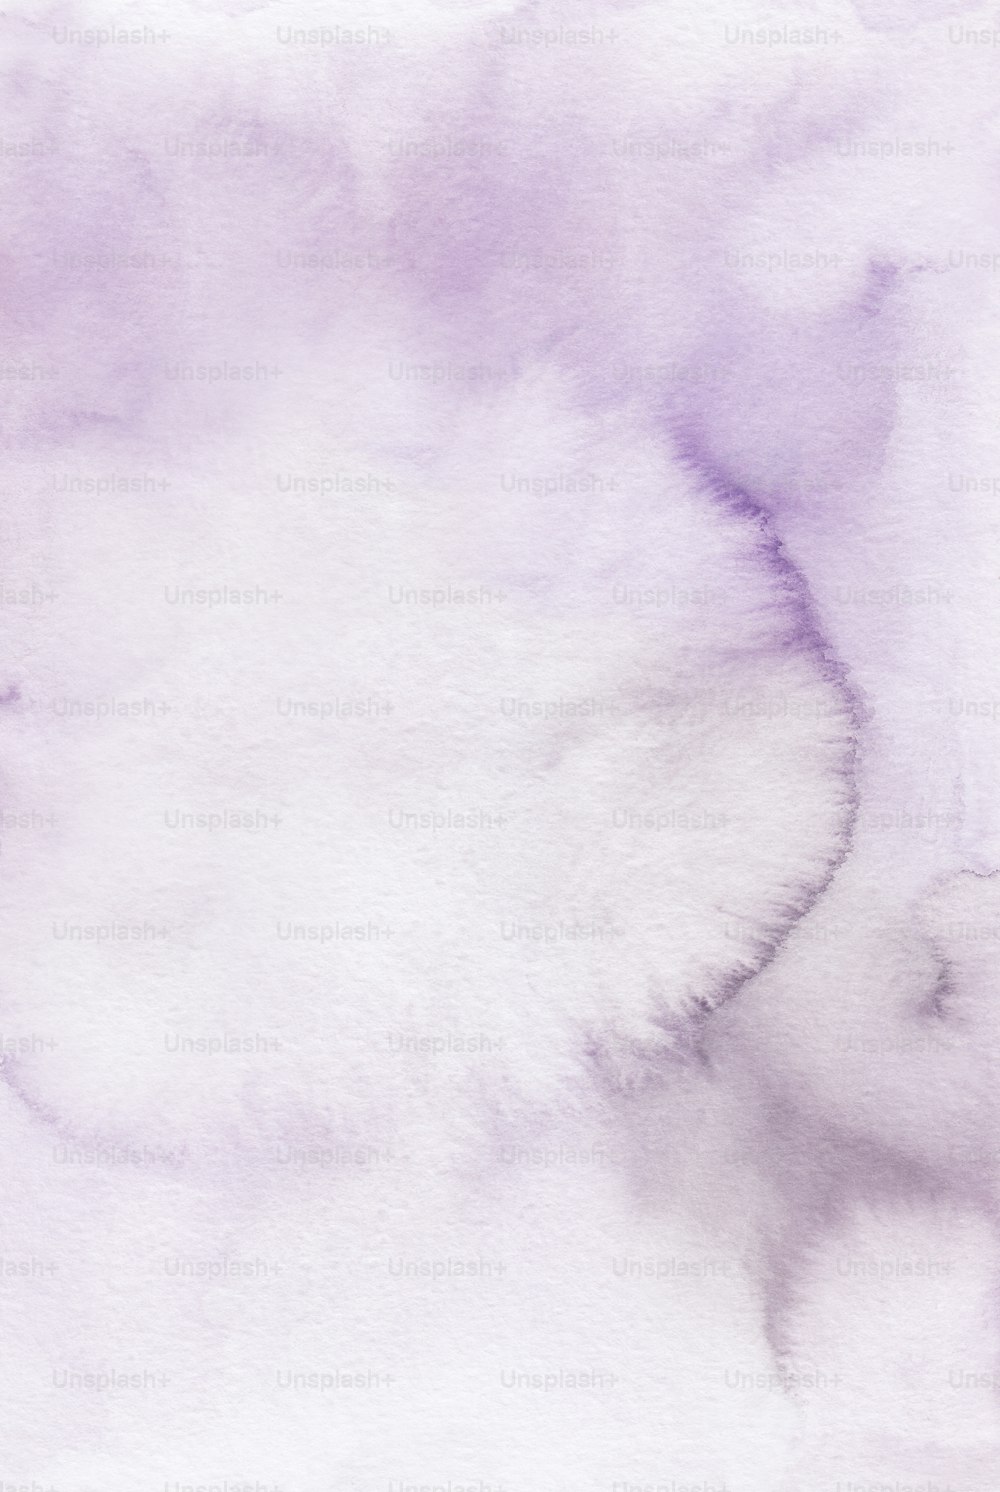 un dipinto ad acquerello di uno sfondo bianco e viola